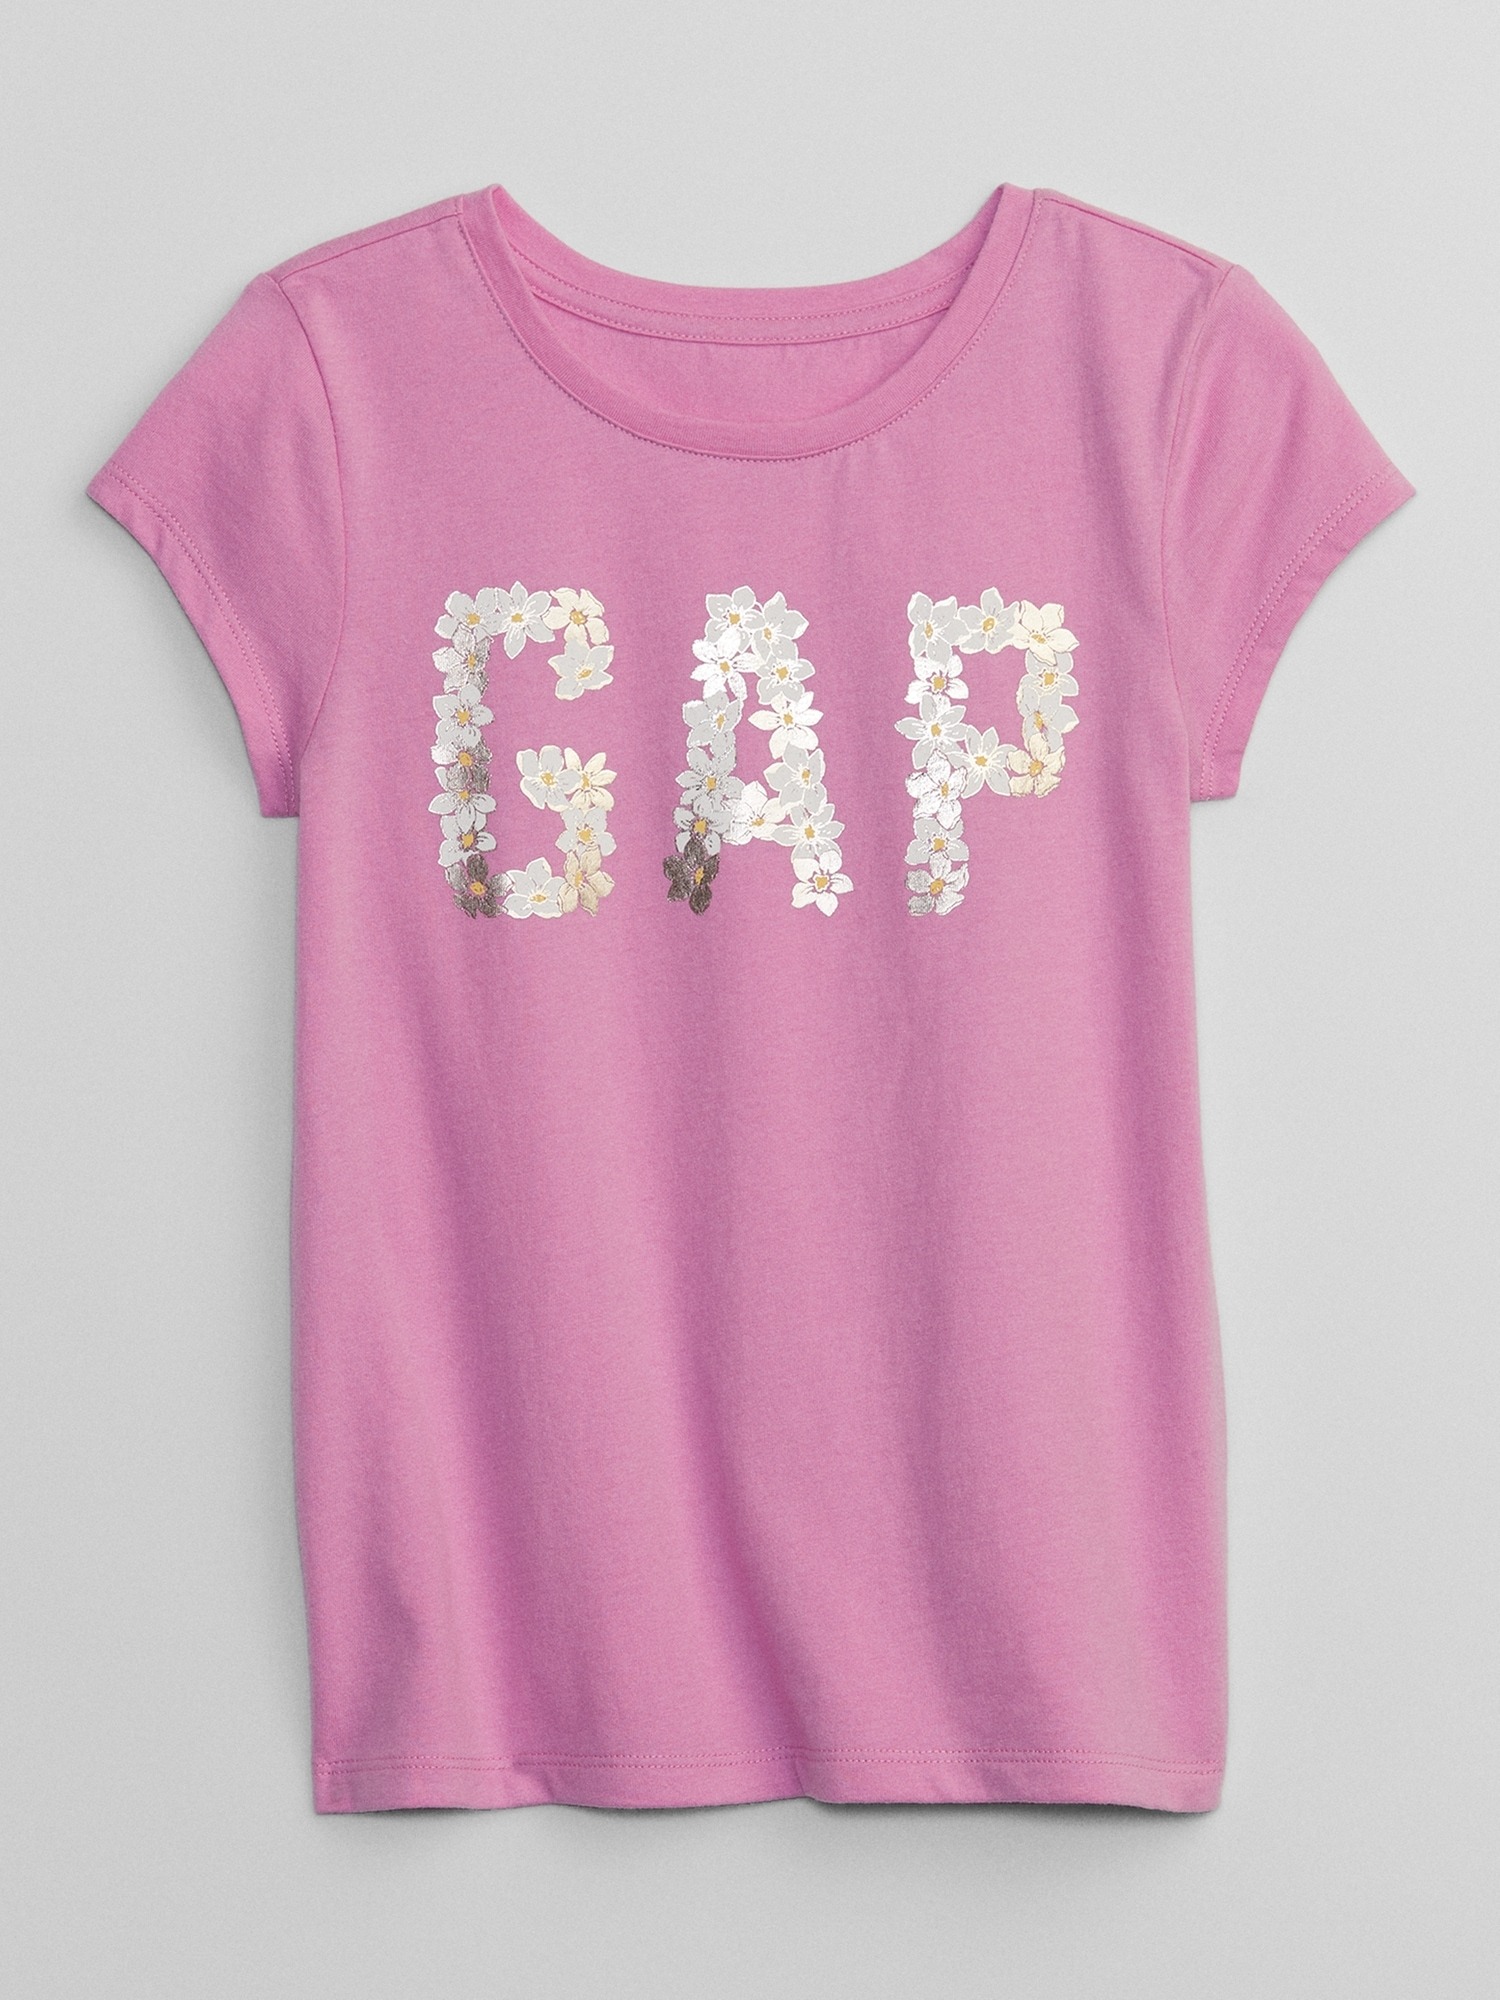 Gap Grafik Baskılı T-Shirt. 1